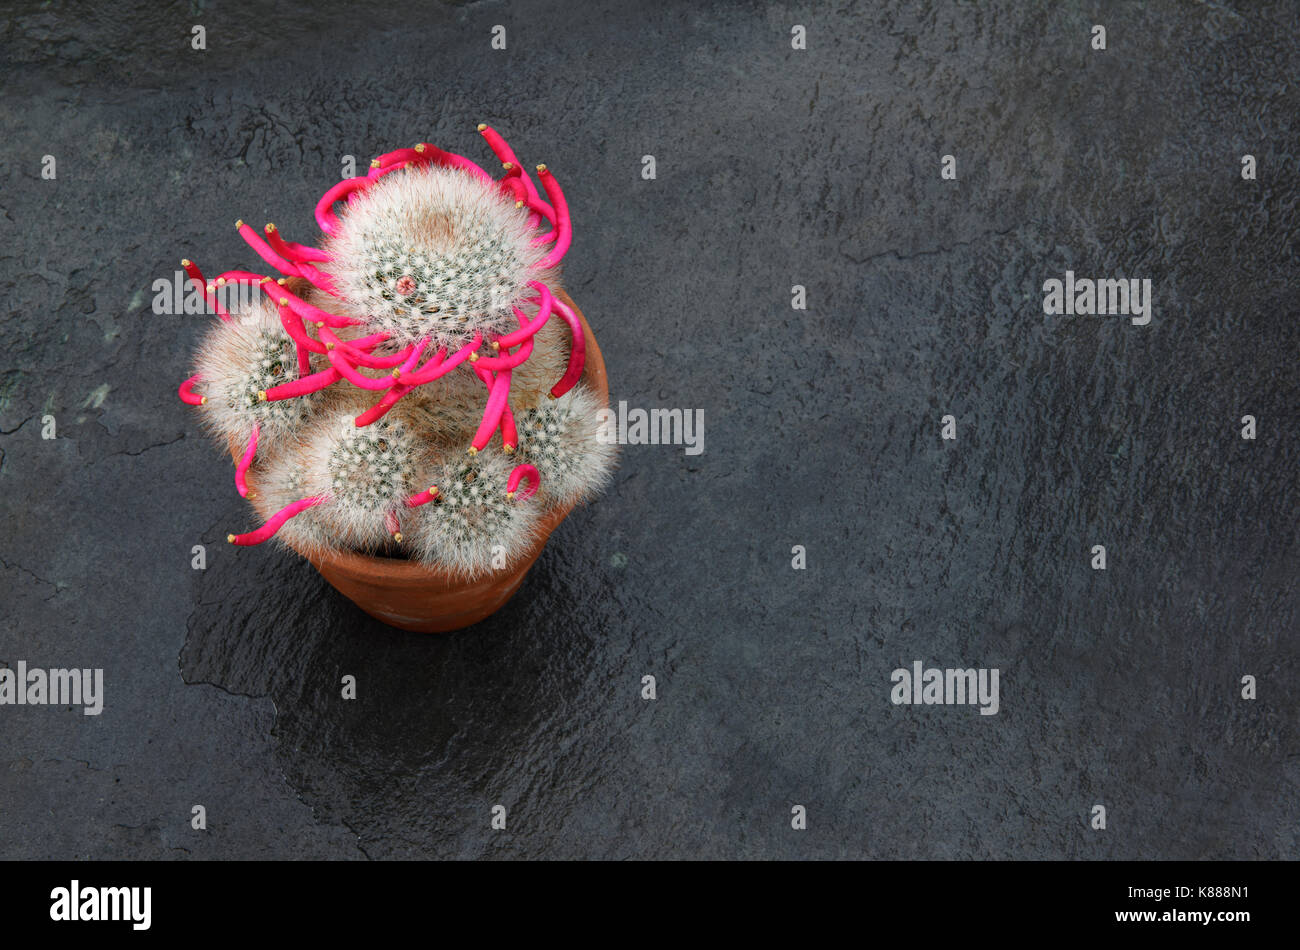 Cactus Mammillaria bocasana fotografiert im September nach der Blüte beendet hat. Die Frucht hat in seiner charakteristischen Spirale Bildung und Th gebildet Stockfoto